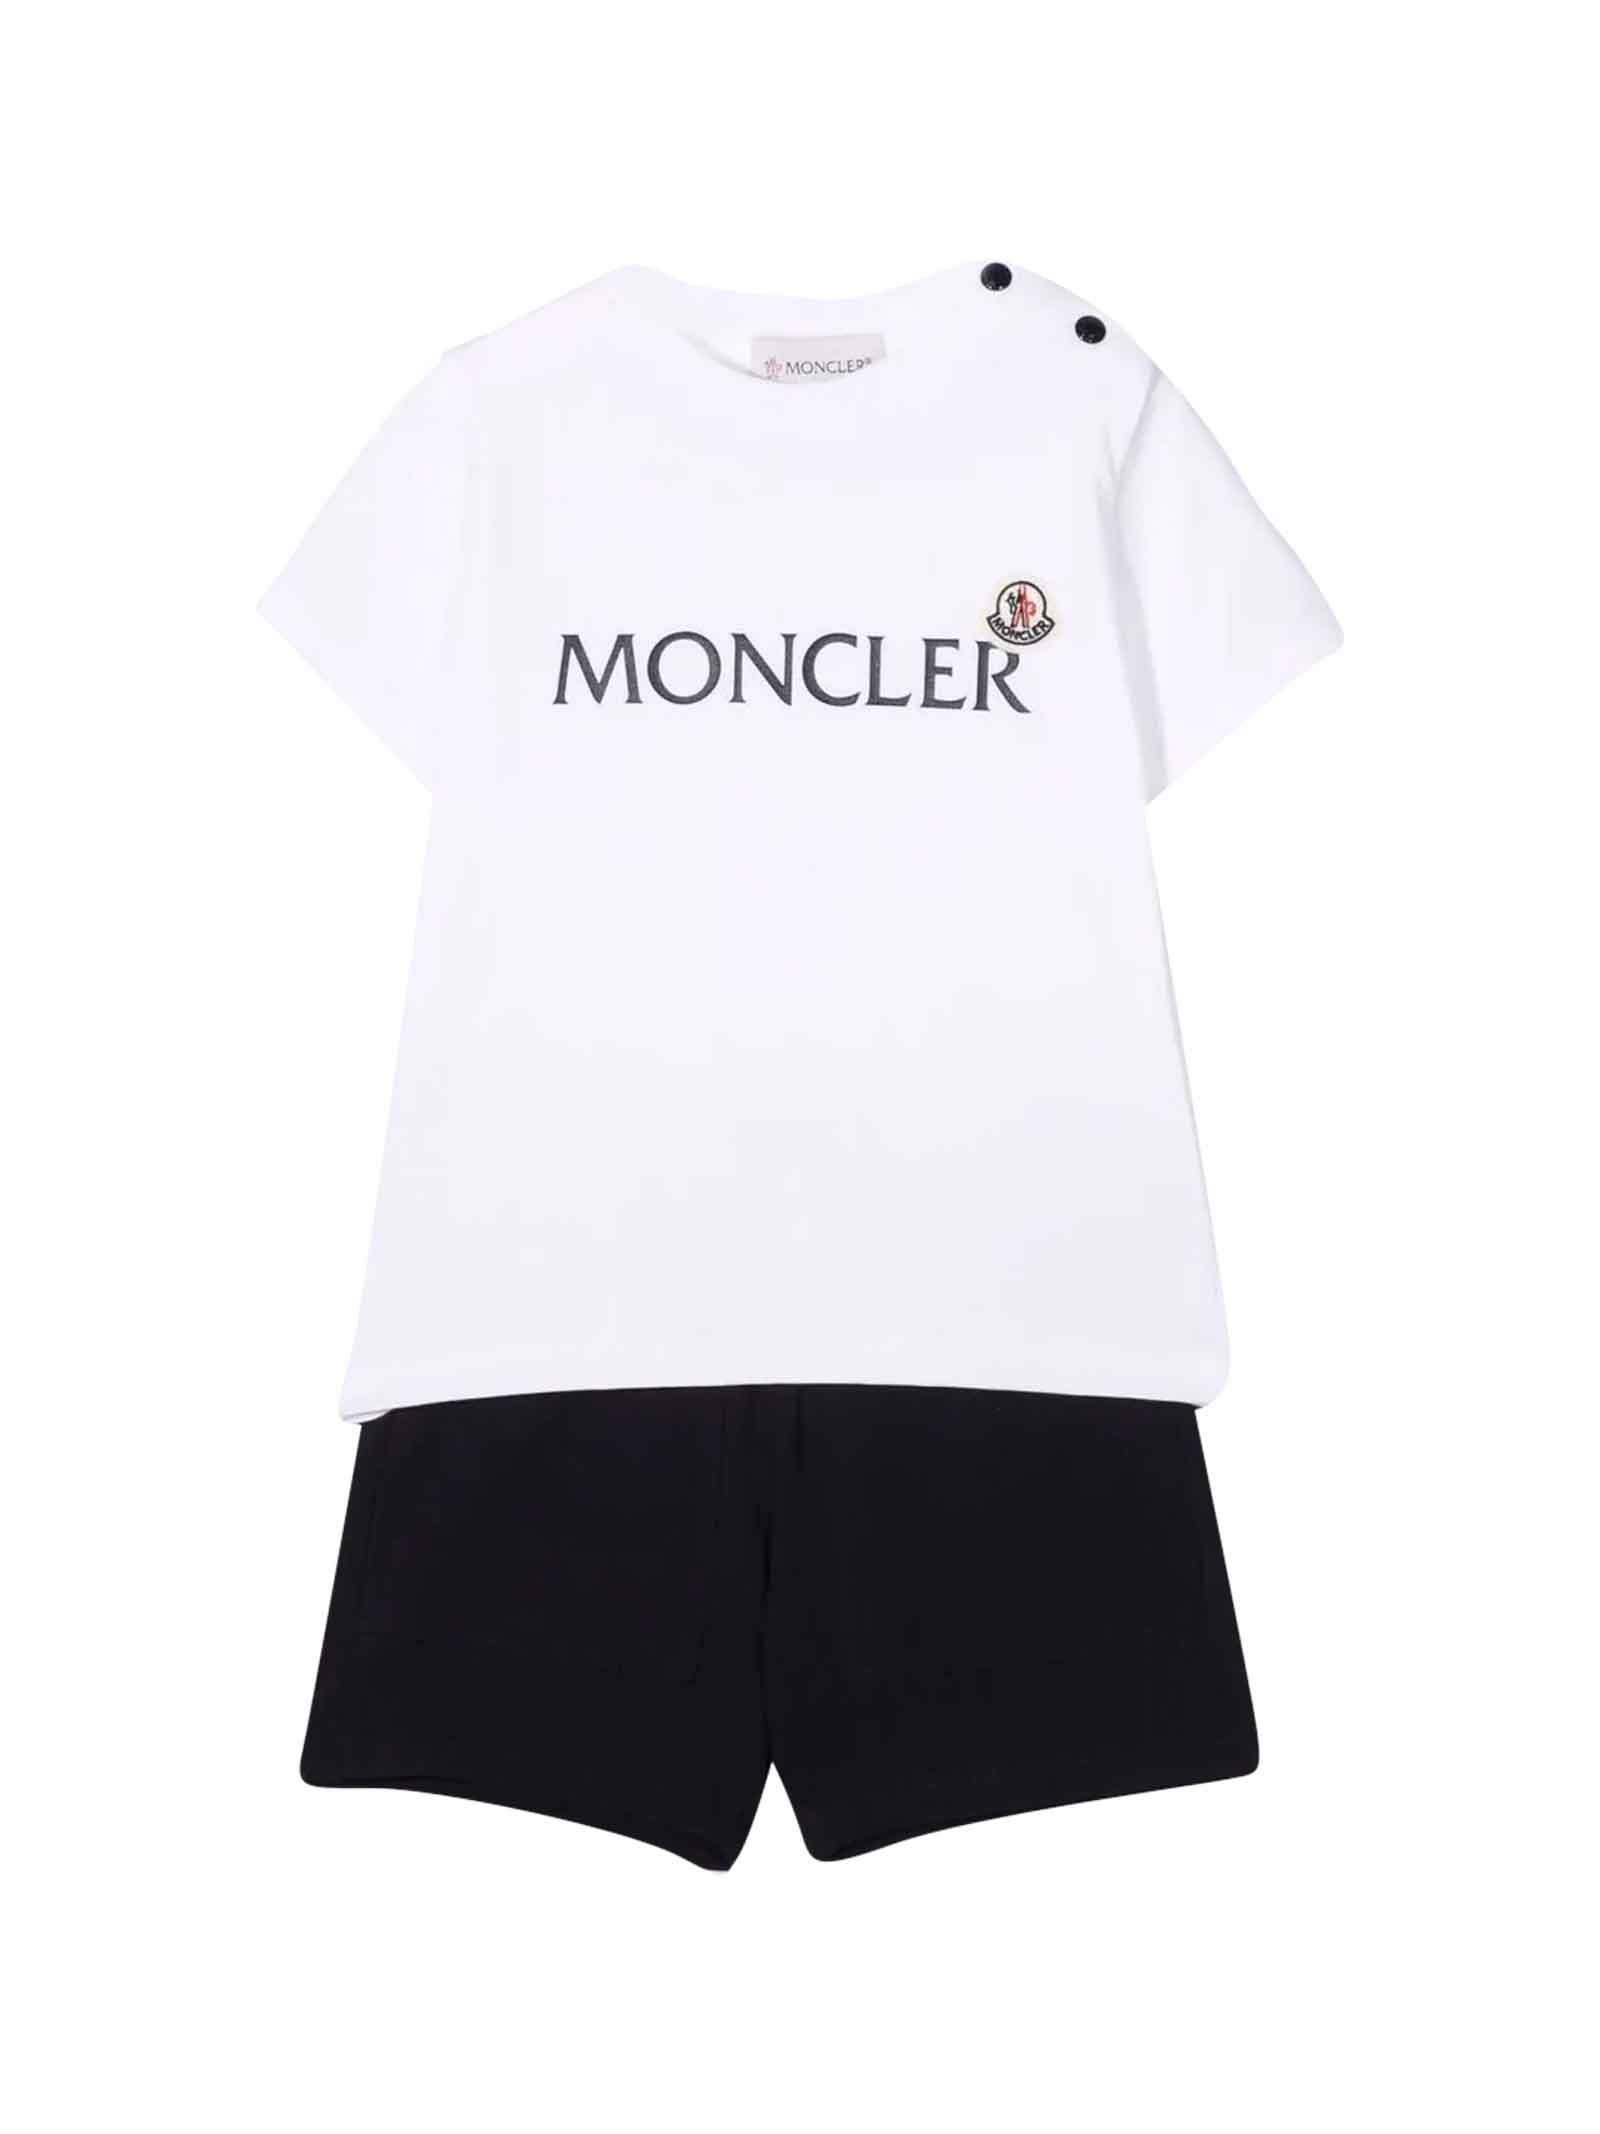 Moncler Unisex Baby Sports Suit